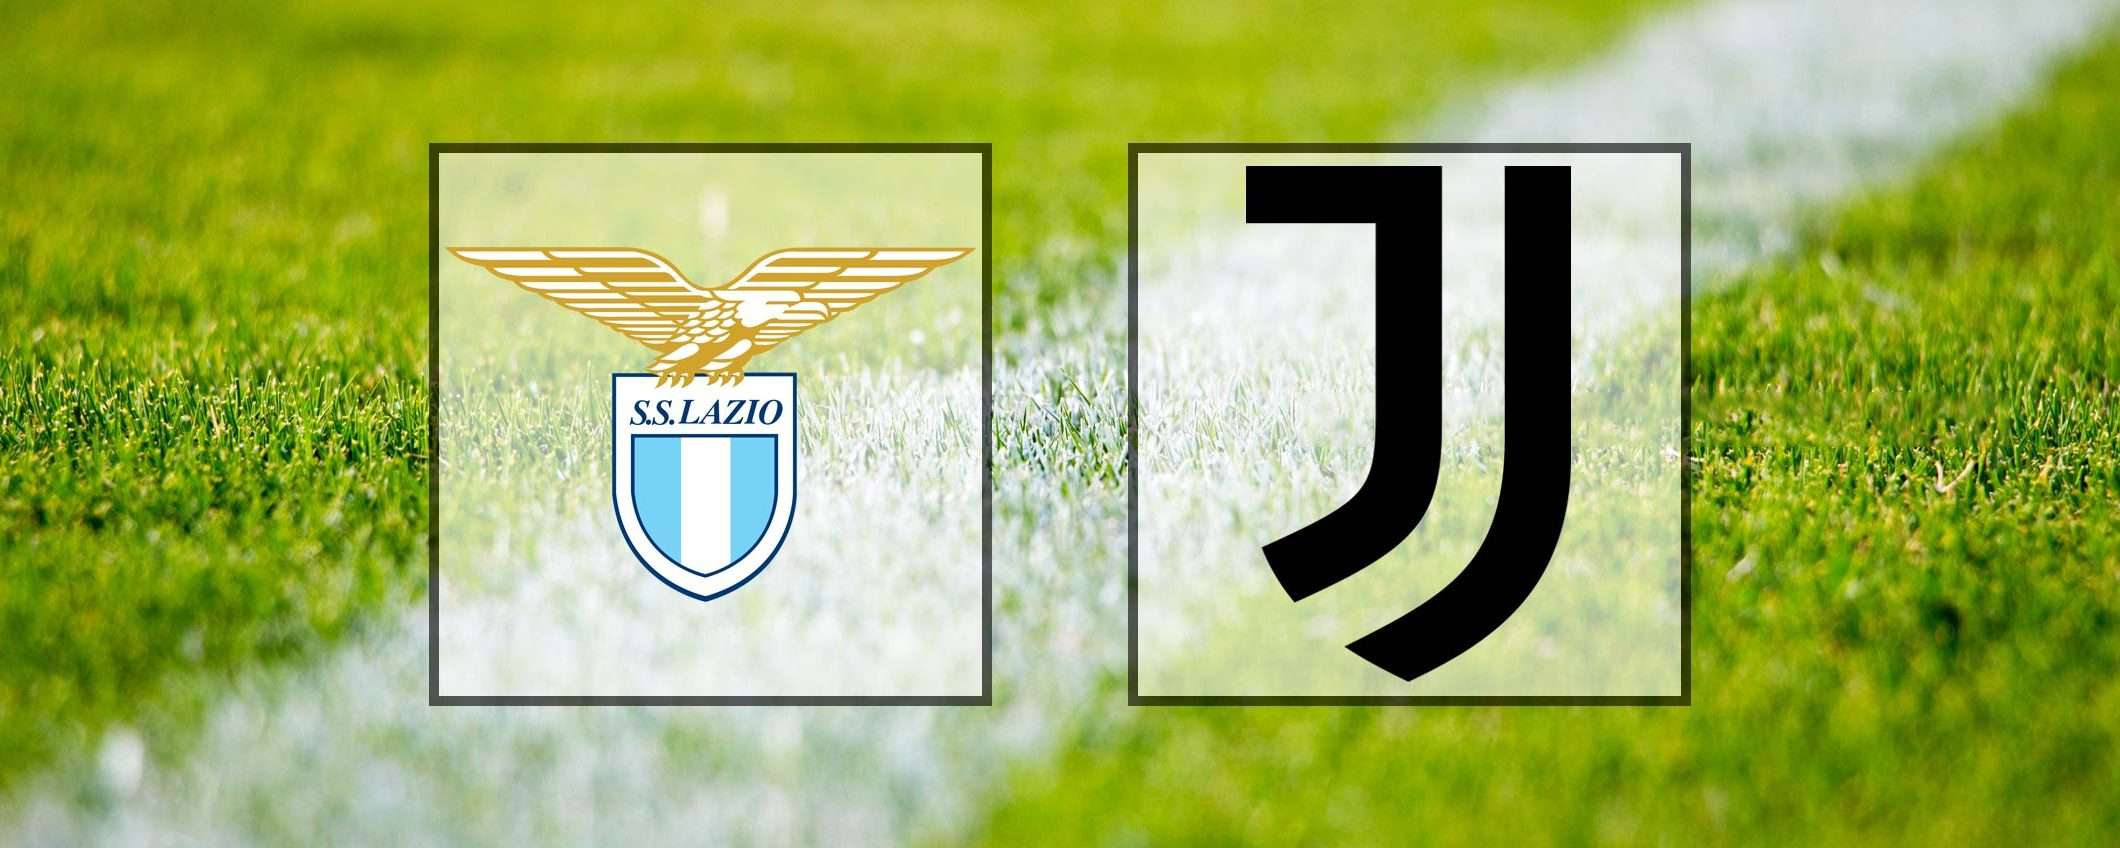 Come vedere Lazio-Juventus in streaming (Serie A)